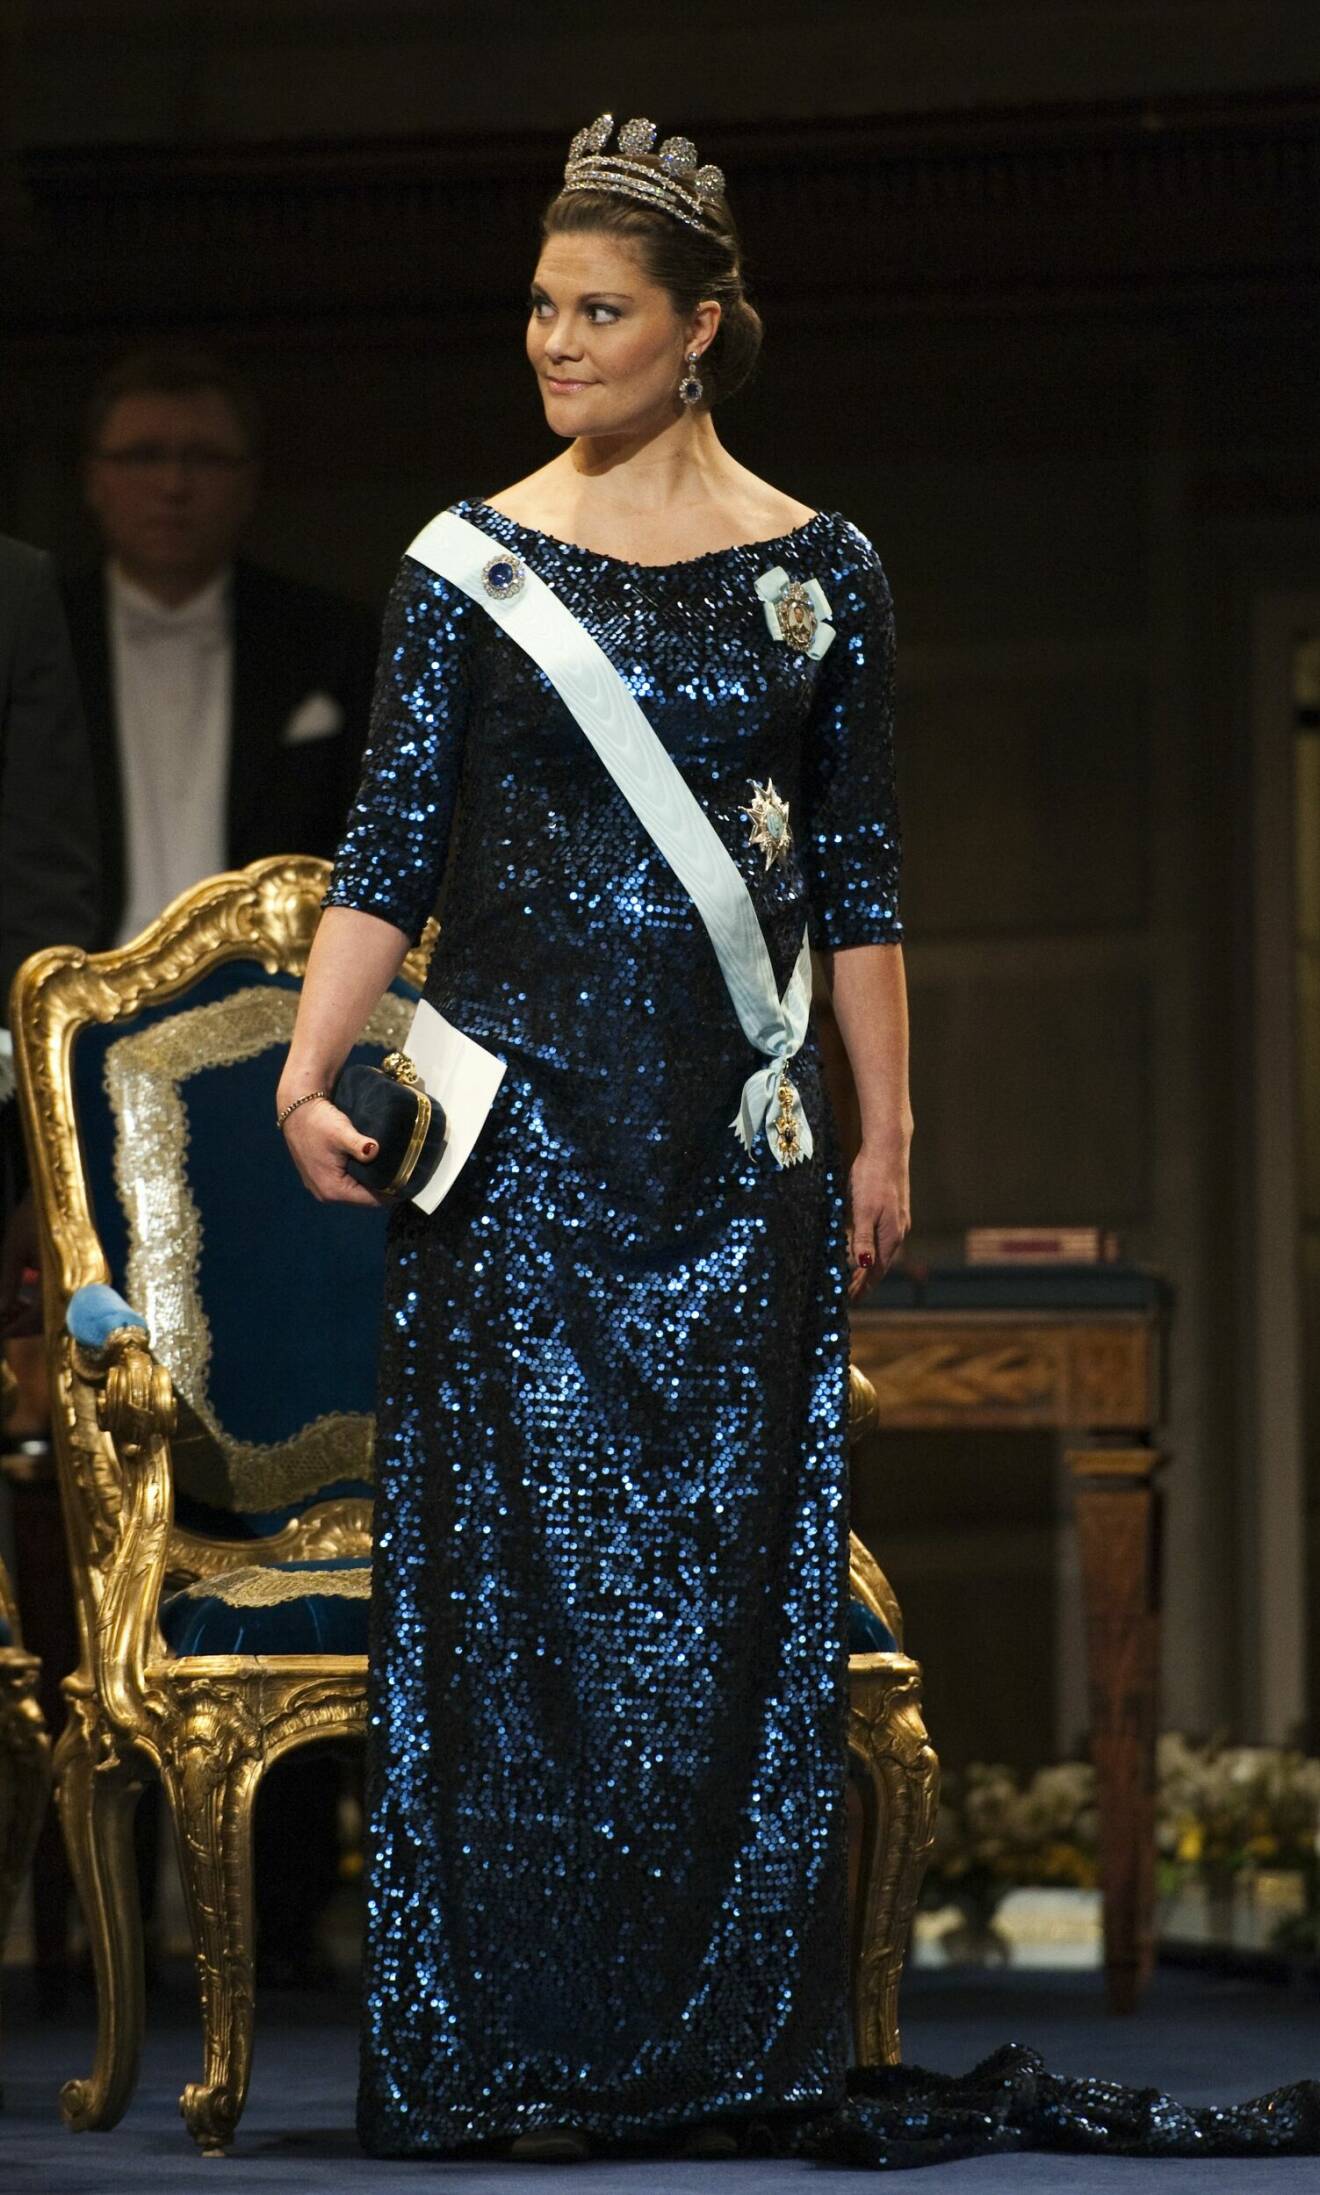 Kronprinsessan Victoria på Nobelfesten 2011